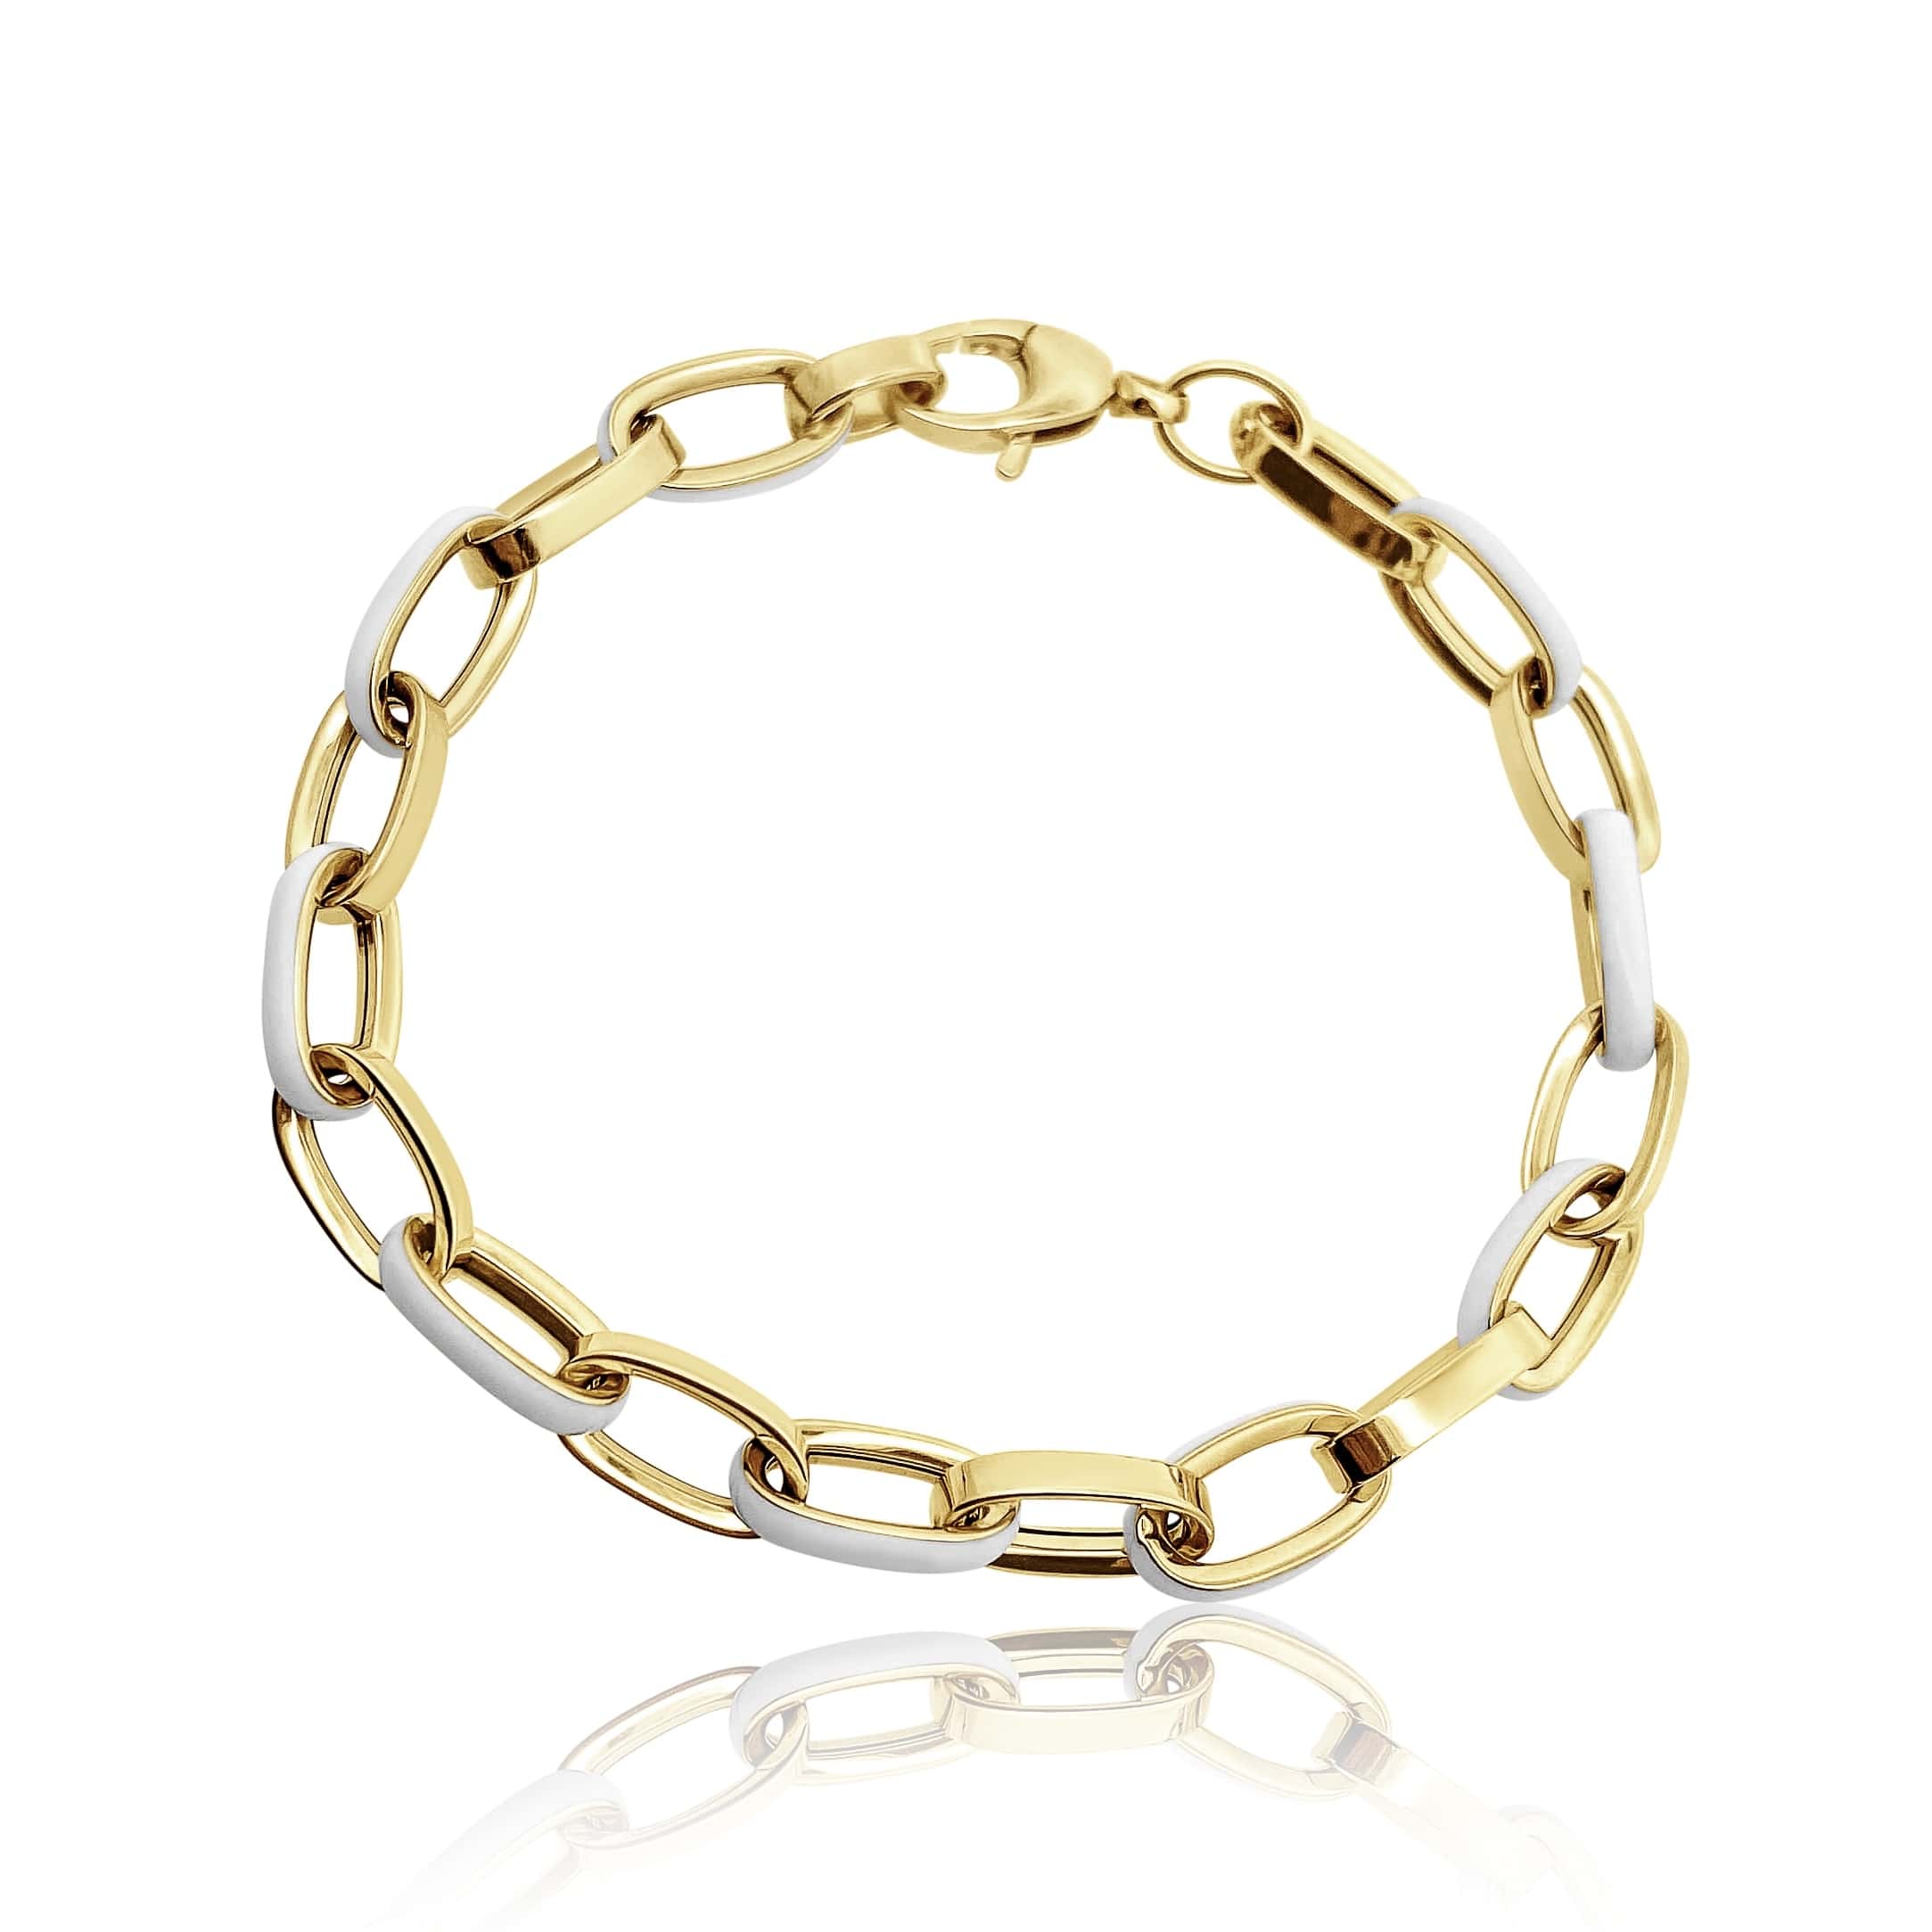 Men's Silver Link Bracelet – SILBERUH